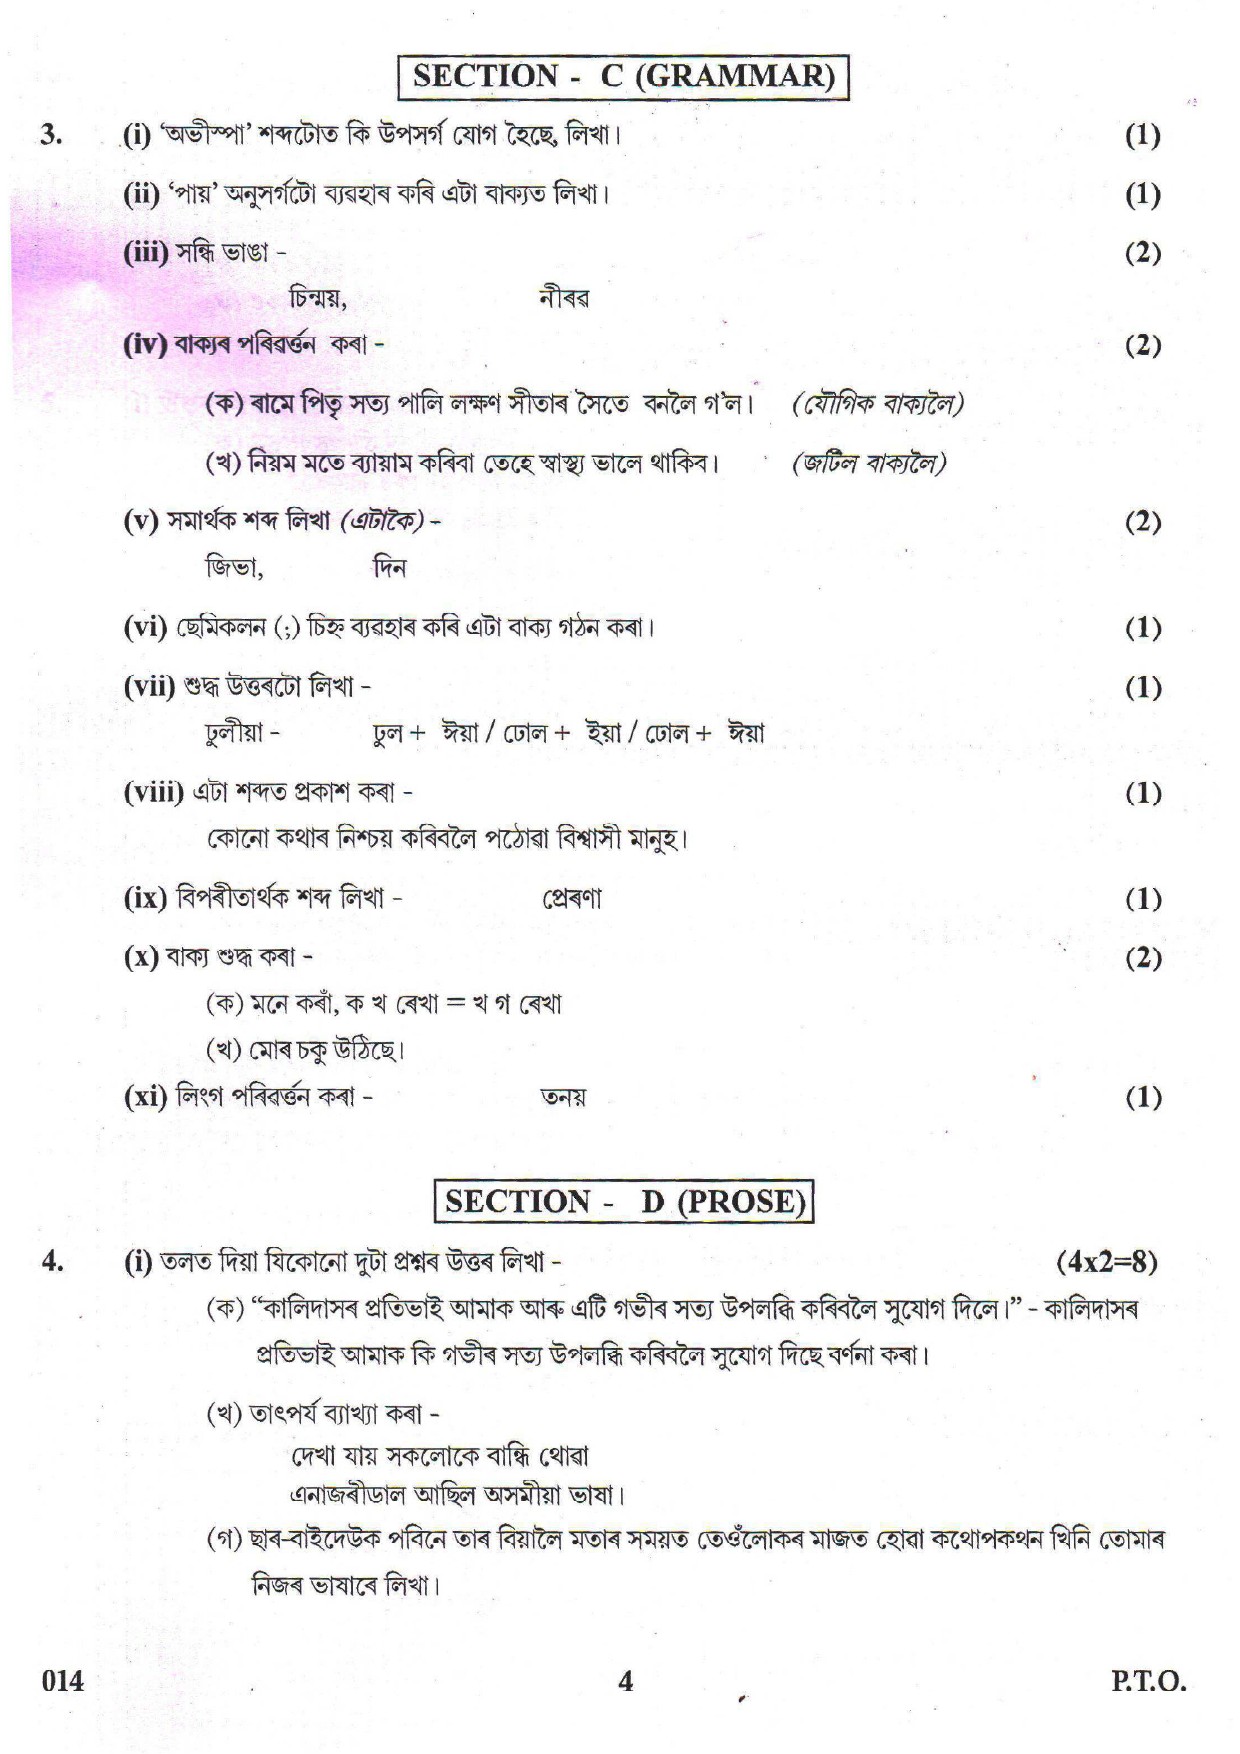 Assamese CBSE Class X Sample Question Paper 2018-19 - Image 4